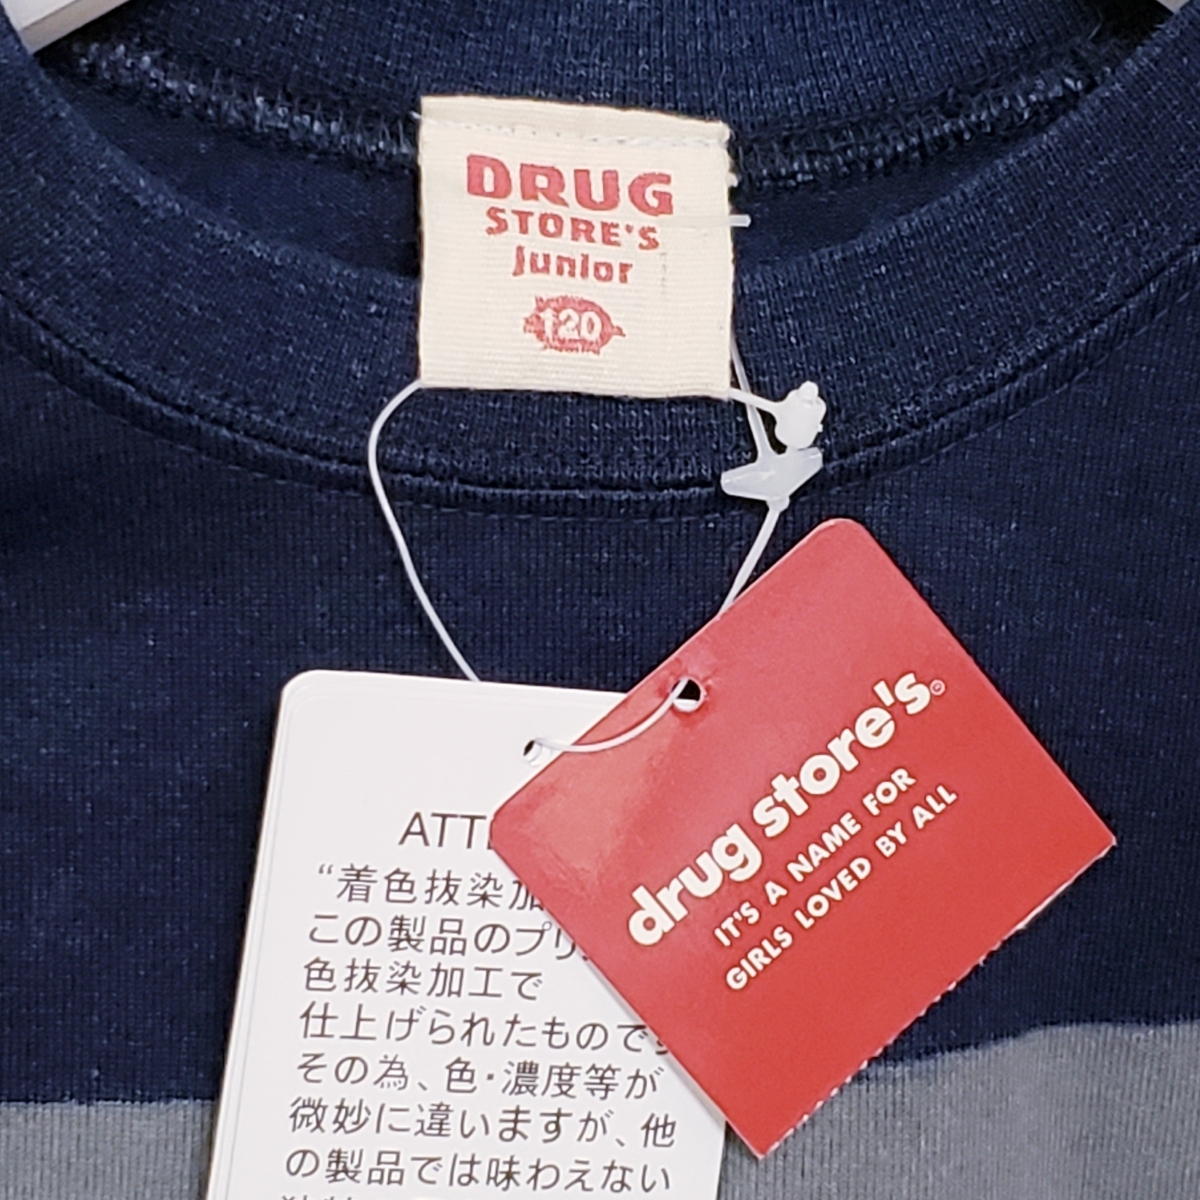   блиц-цена   новый товар  бирка есть   ... магазин ... 120  футболка   рекомендуемая розничная цена 4095  йен  ... и ...